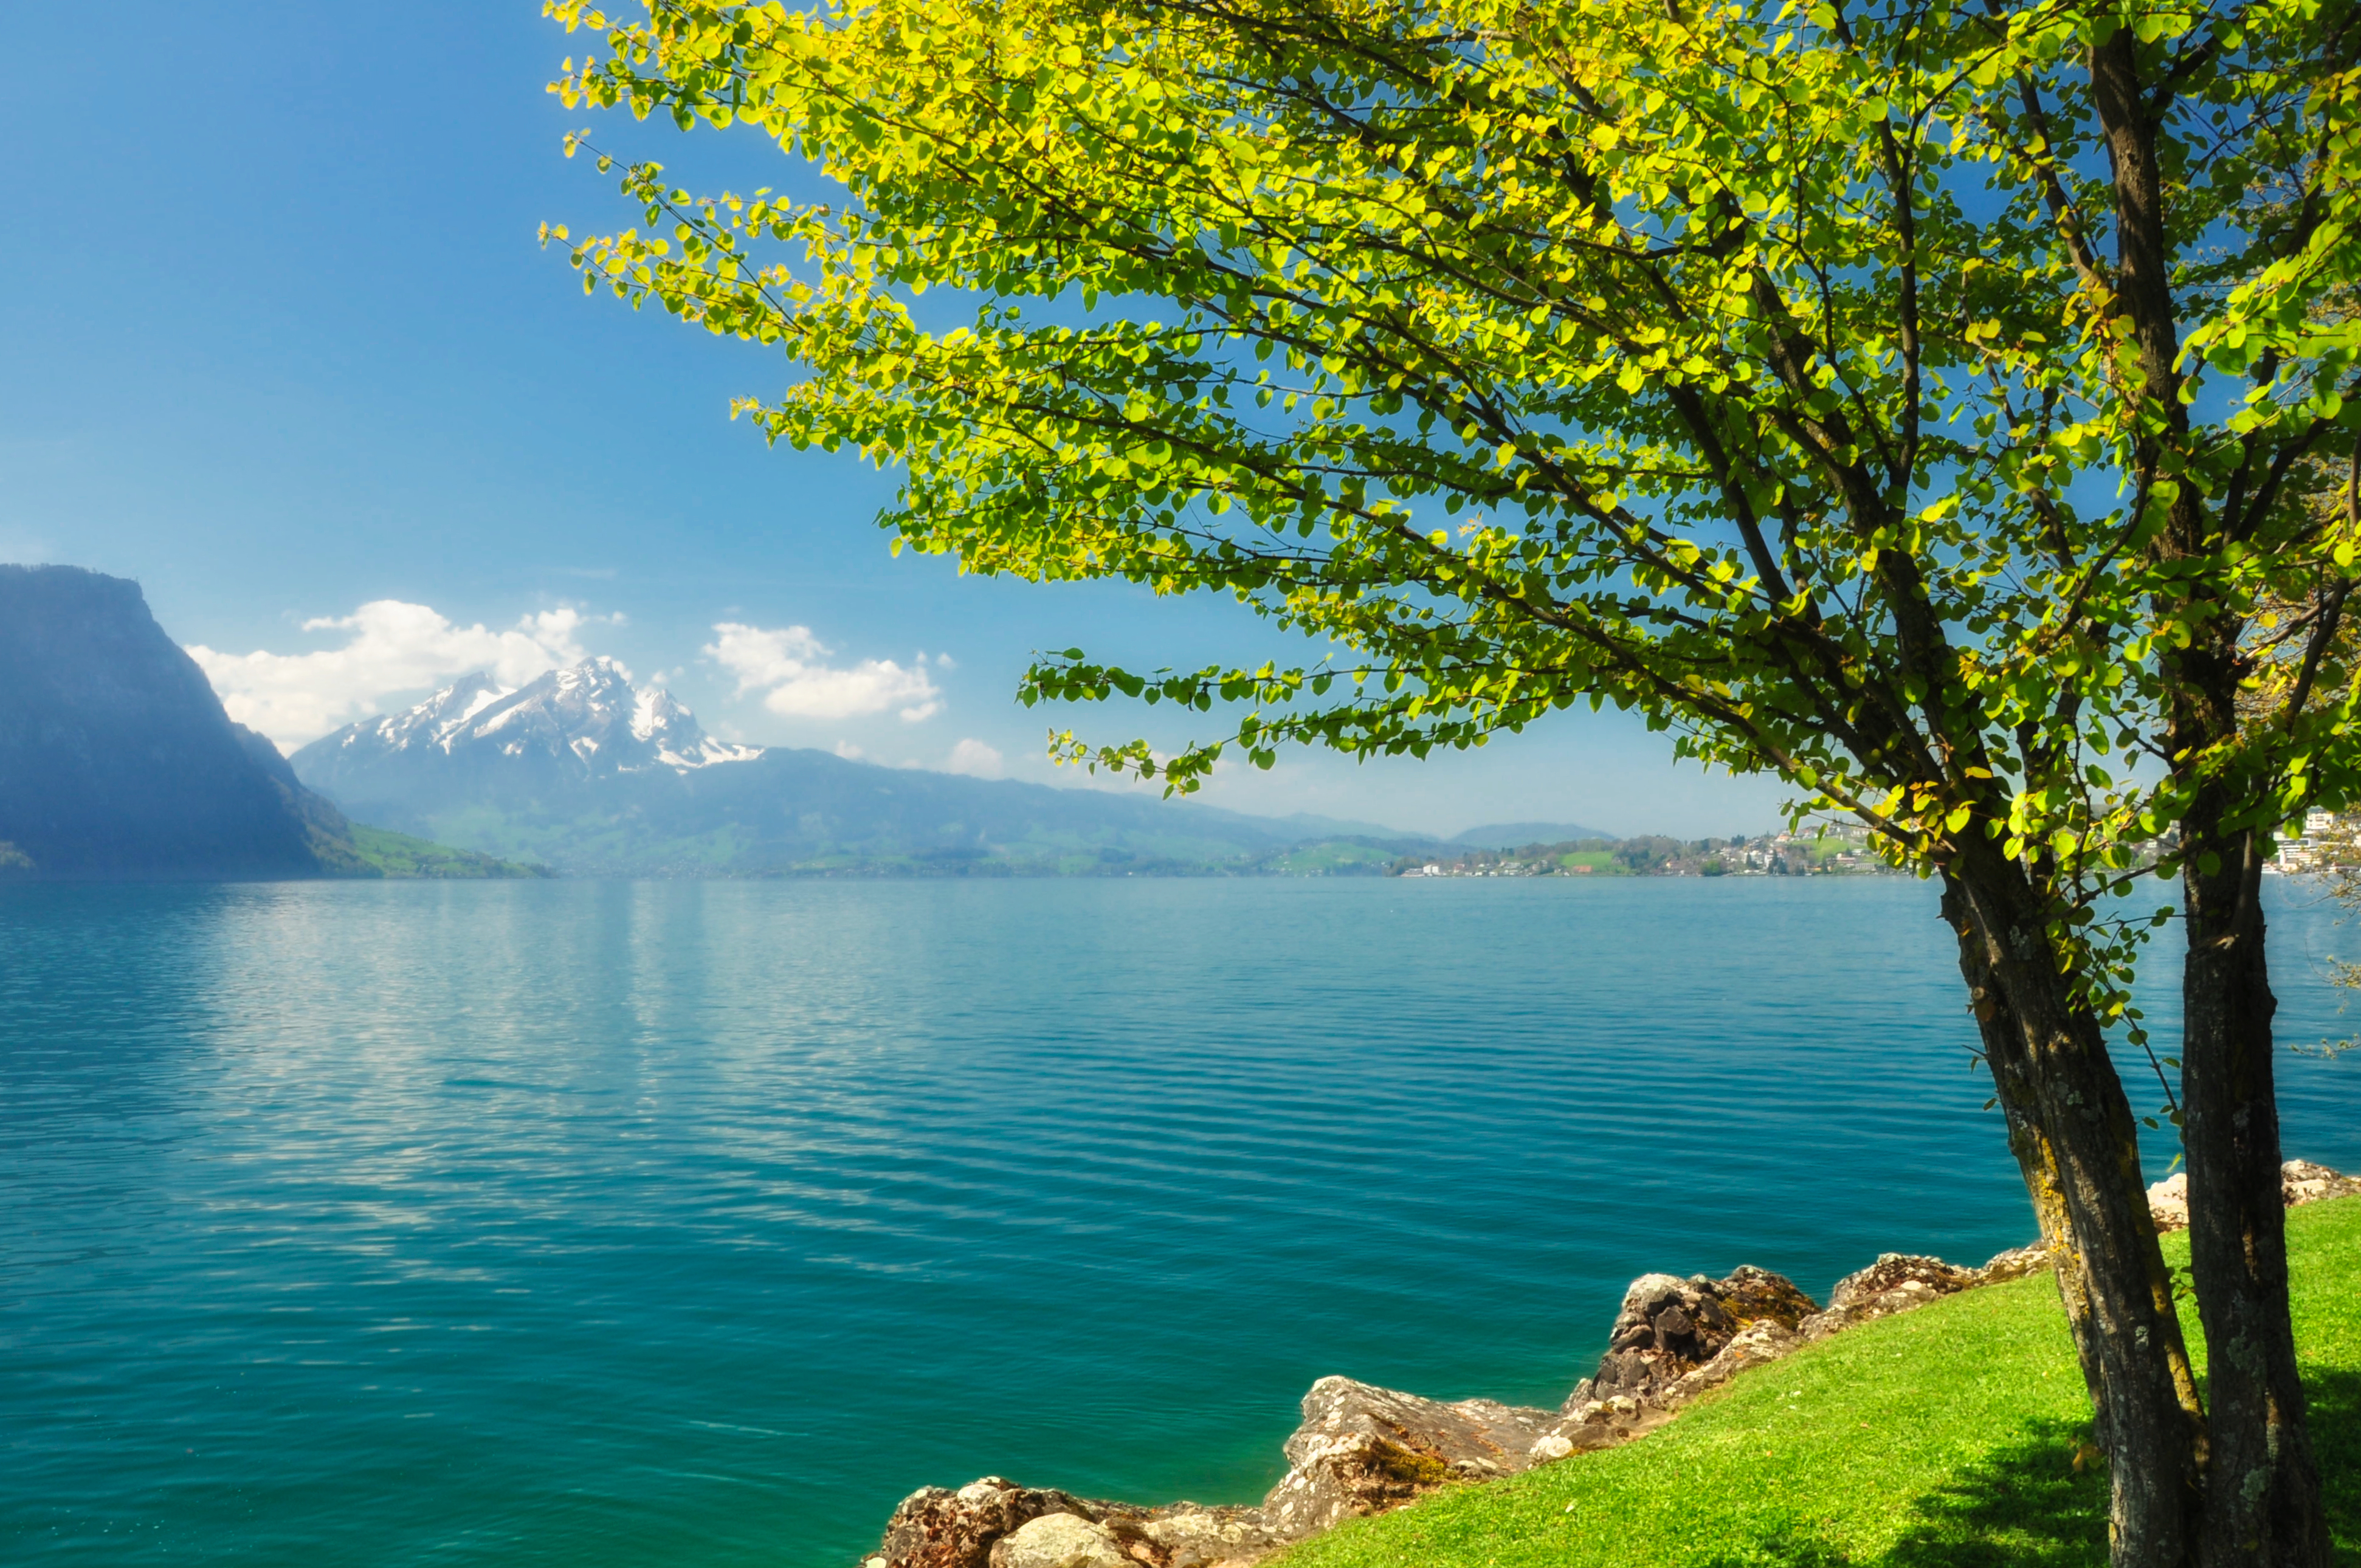 Местоположение и природа. Фирвальдштетское озеро Швейцария. Абхазия горы и море. Озеро в горах. Природа море.